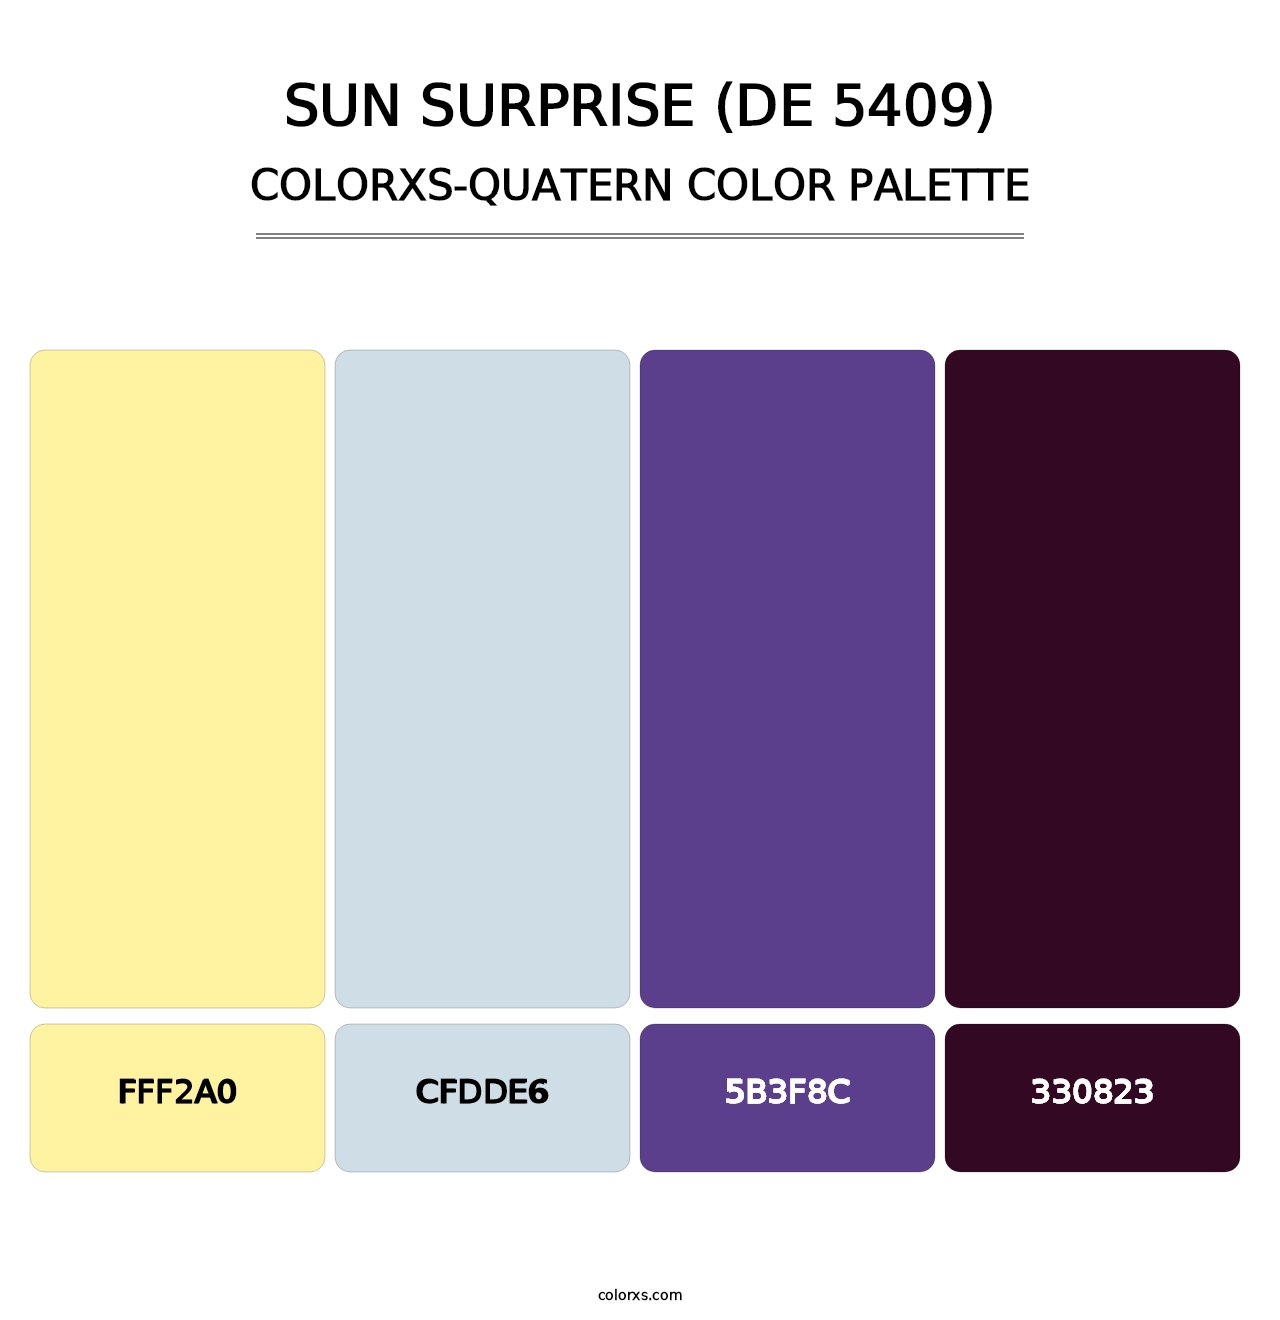 Sun Surprise (DE 5409) - Colorxs Quatern Palette